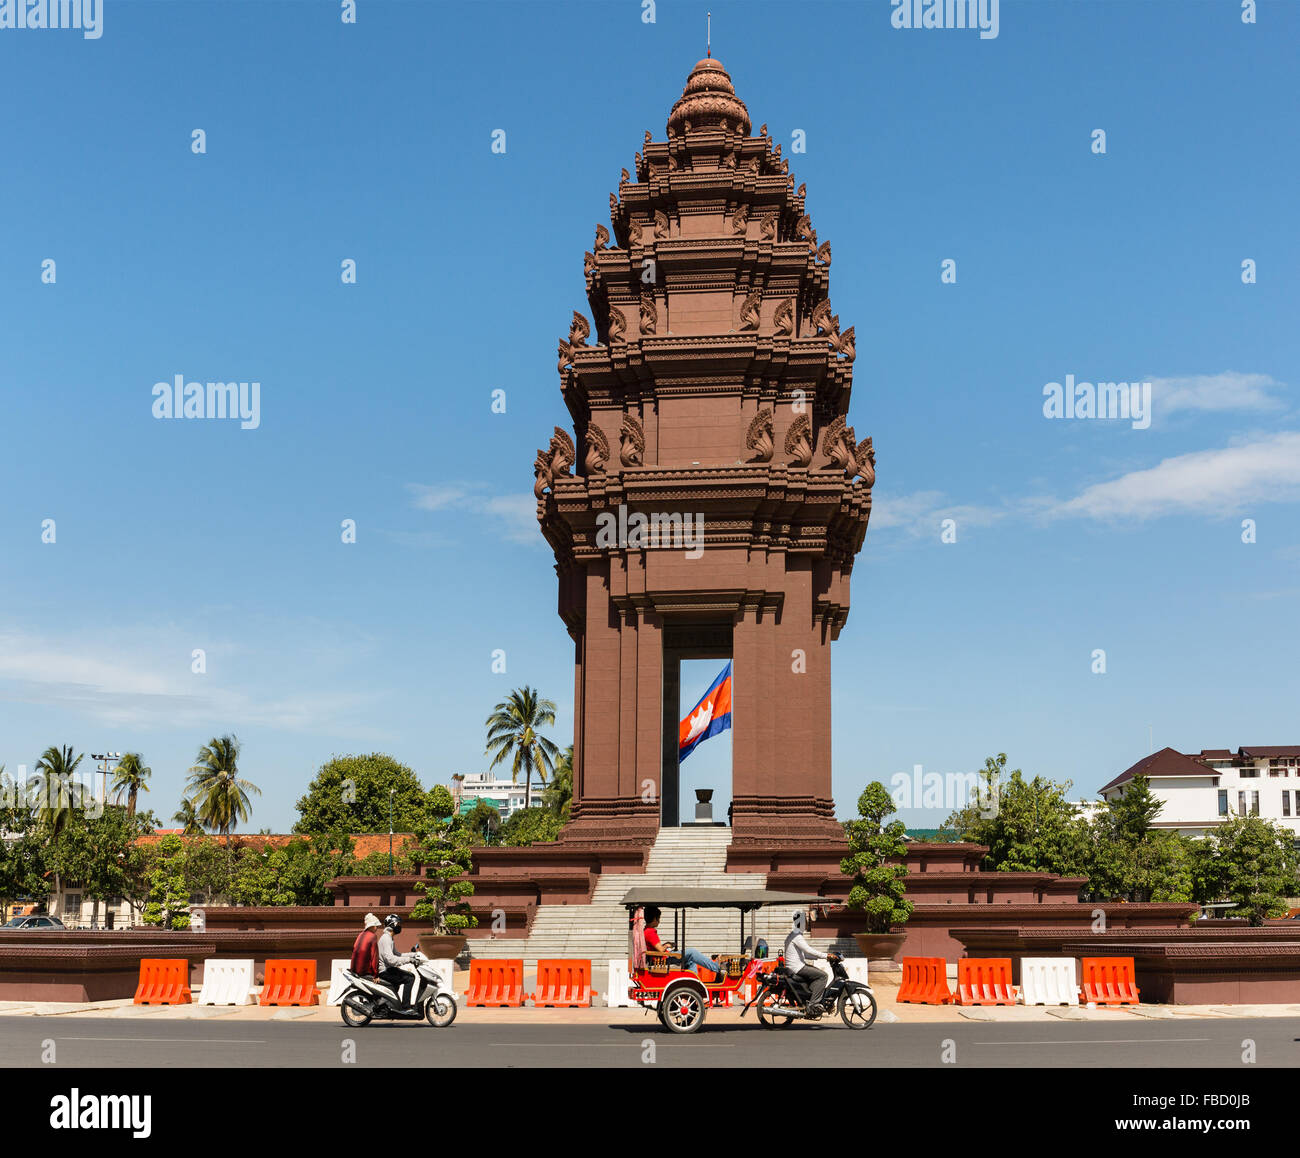 Au rond-point, le Monument de l'indépendance, Tuk Tuk taxi à l'Phnom Penh, Cambodge Banque D'Images